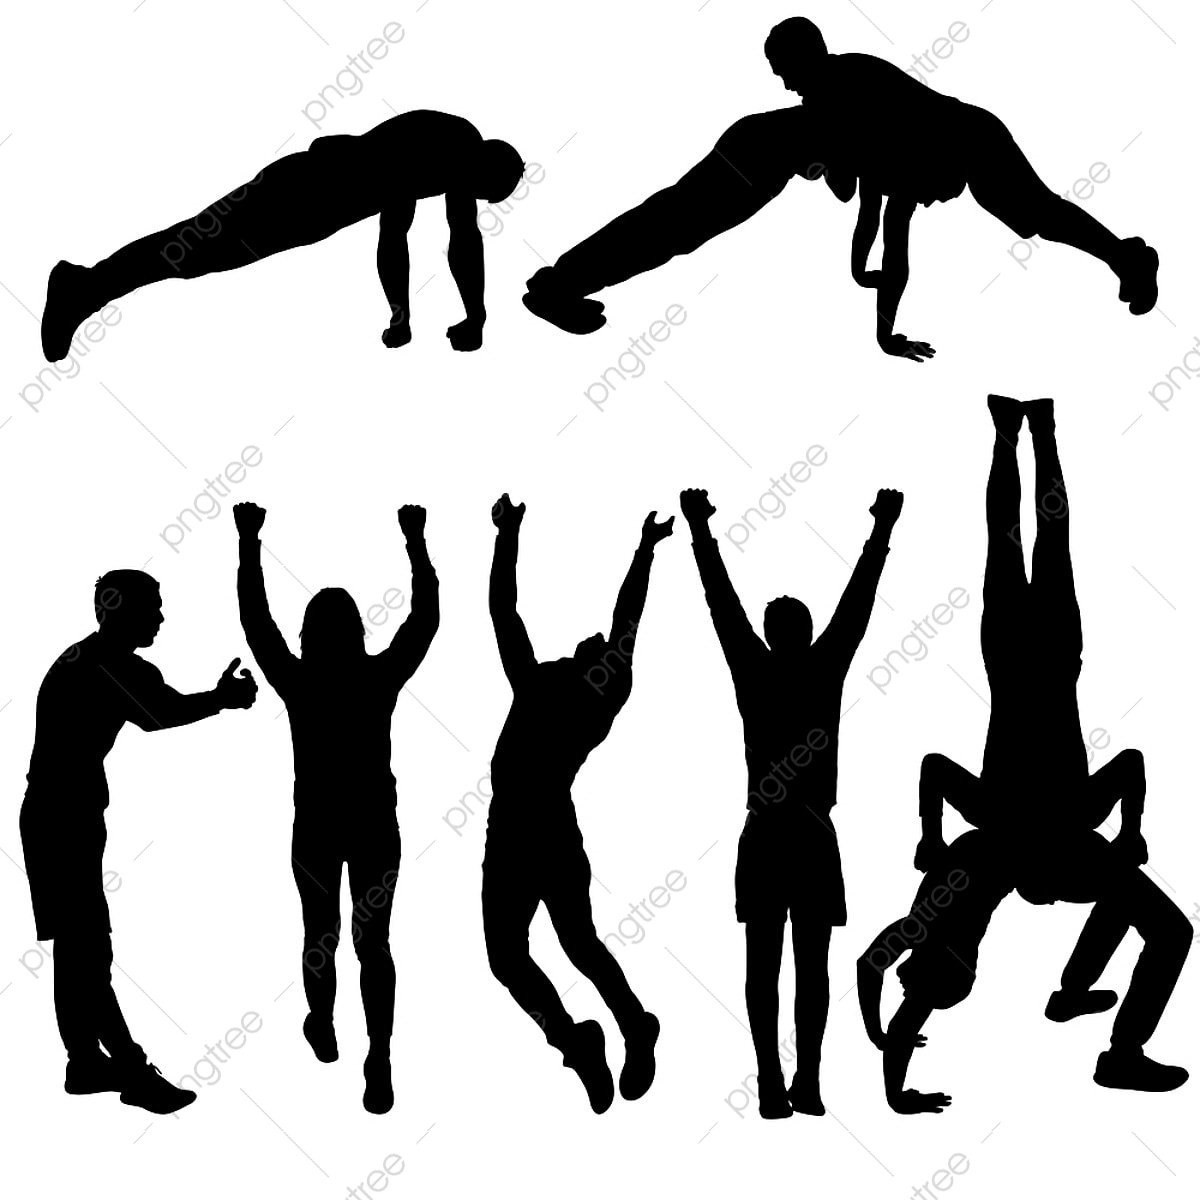 Gymnastik, die mit Musikbegleitung durchgeführt wird, wird genannt